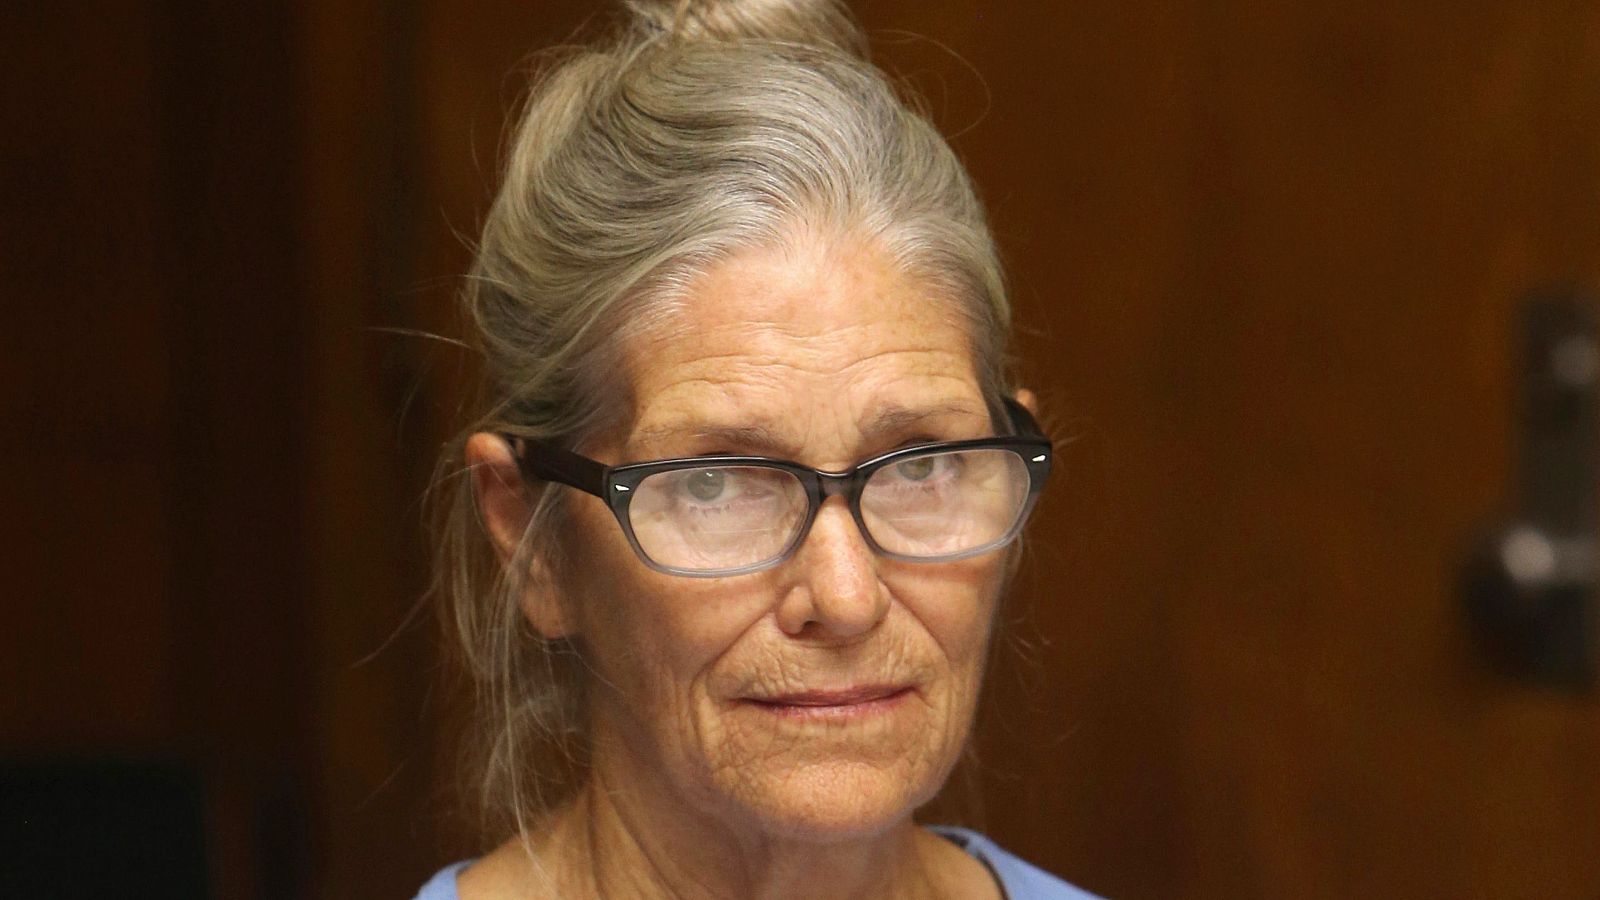 Leslie Van Houten, miembro de la 'Familia Manson', queda en libertad tras 53 años en la cárcel